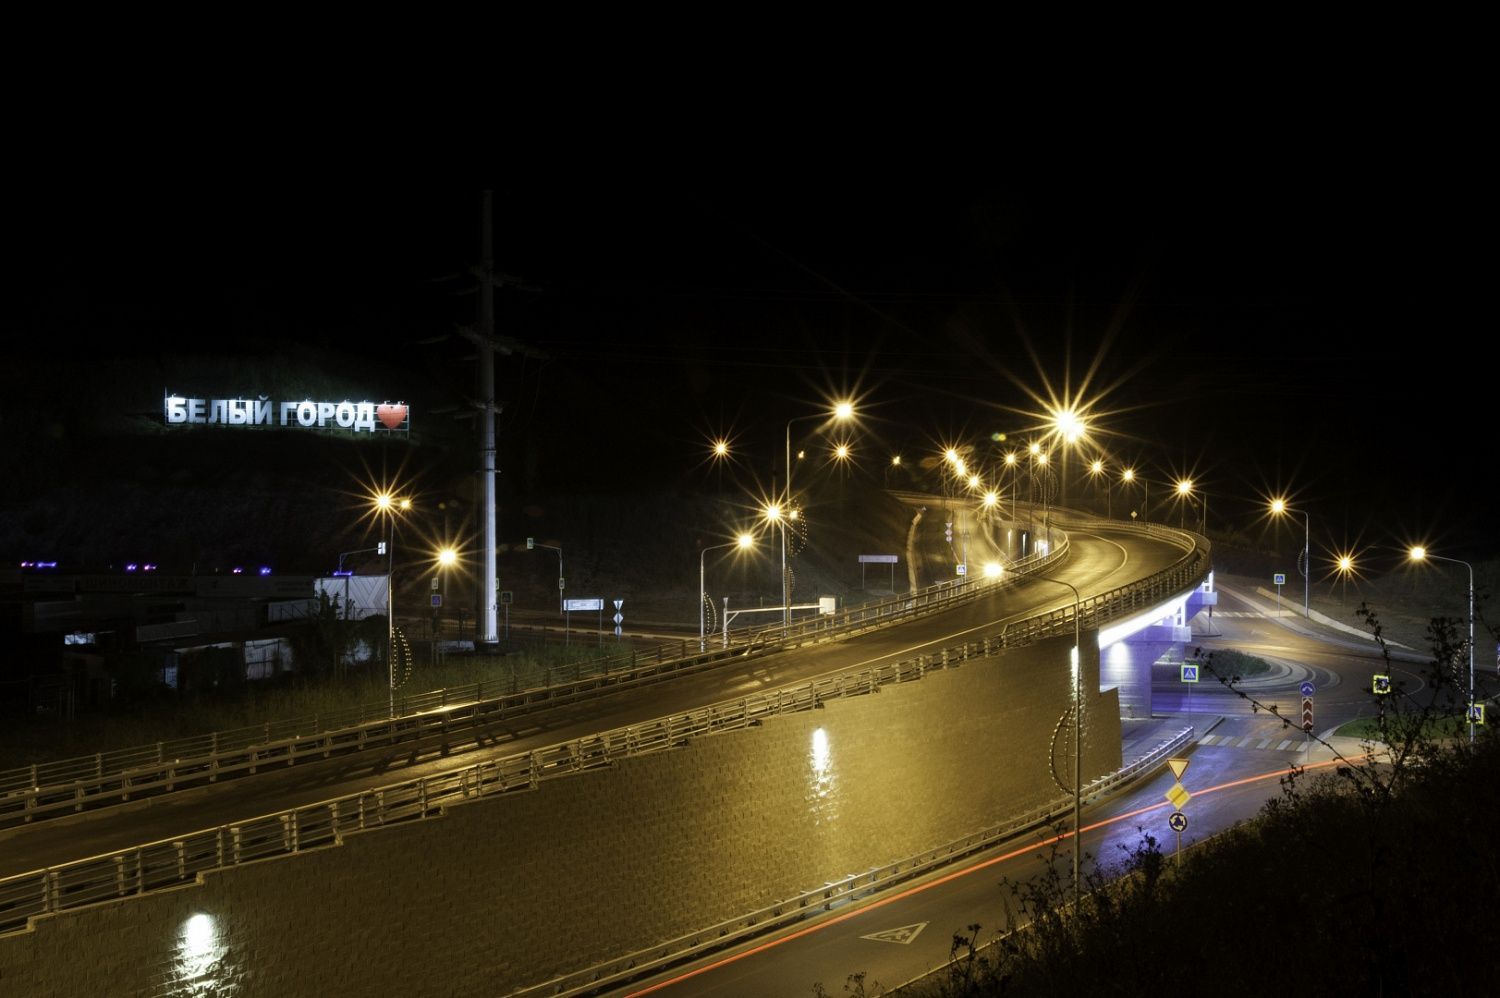 Мост в г. Белгород - освещение моста, Белгород, 2020